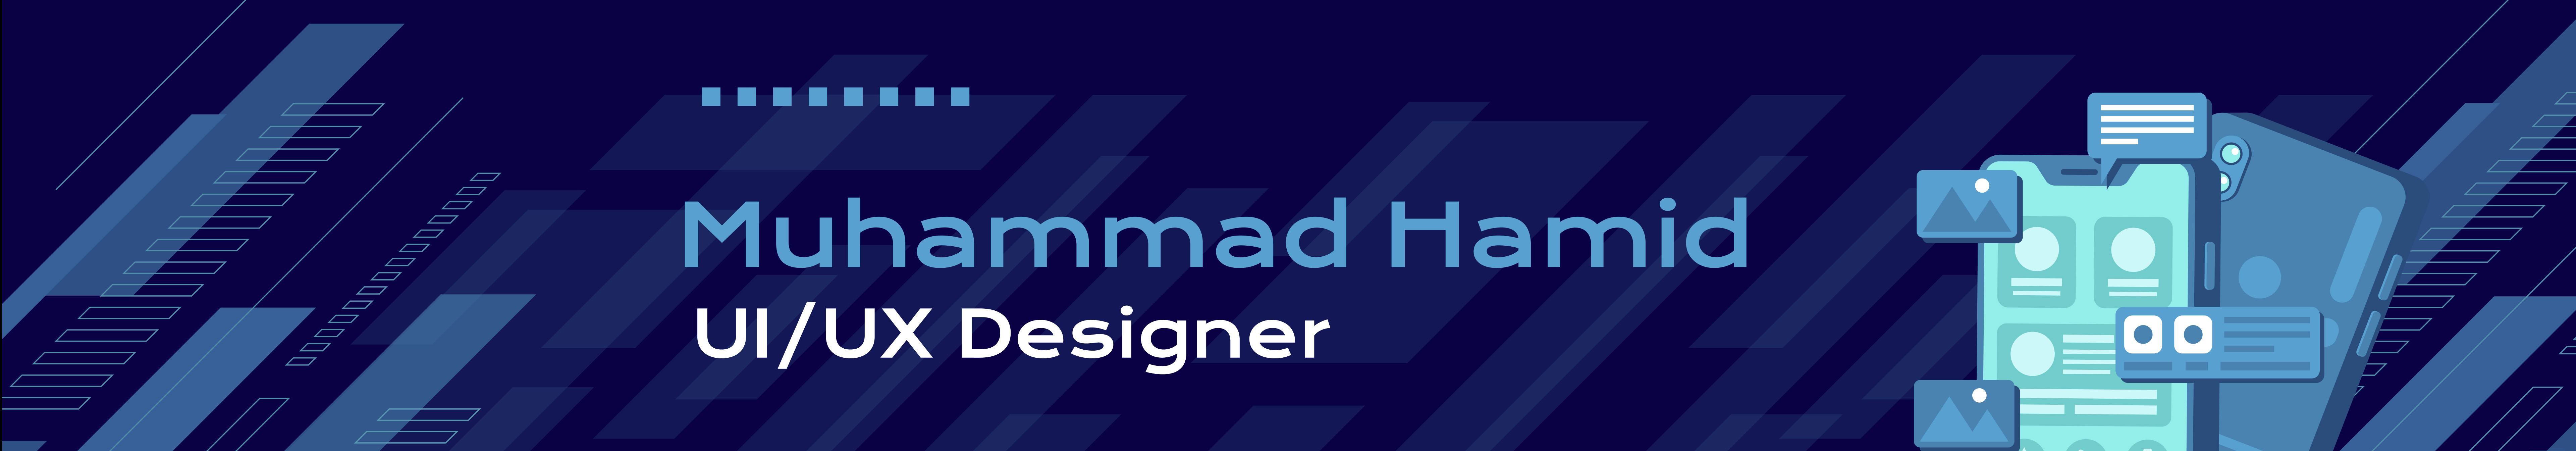 Banner profilu uživatele Muhammad Hamid